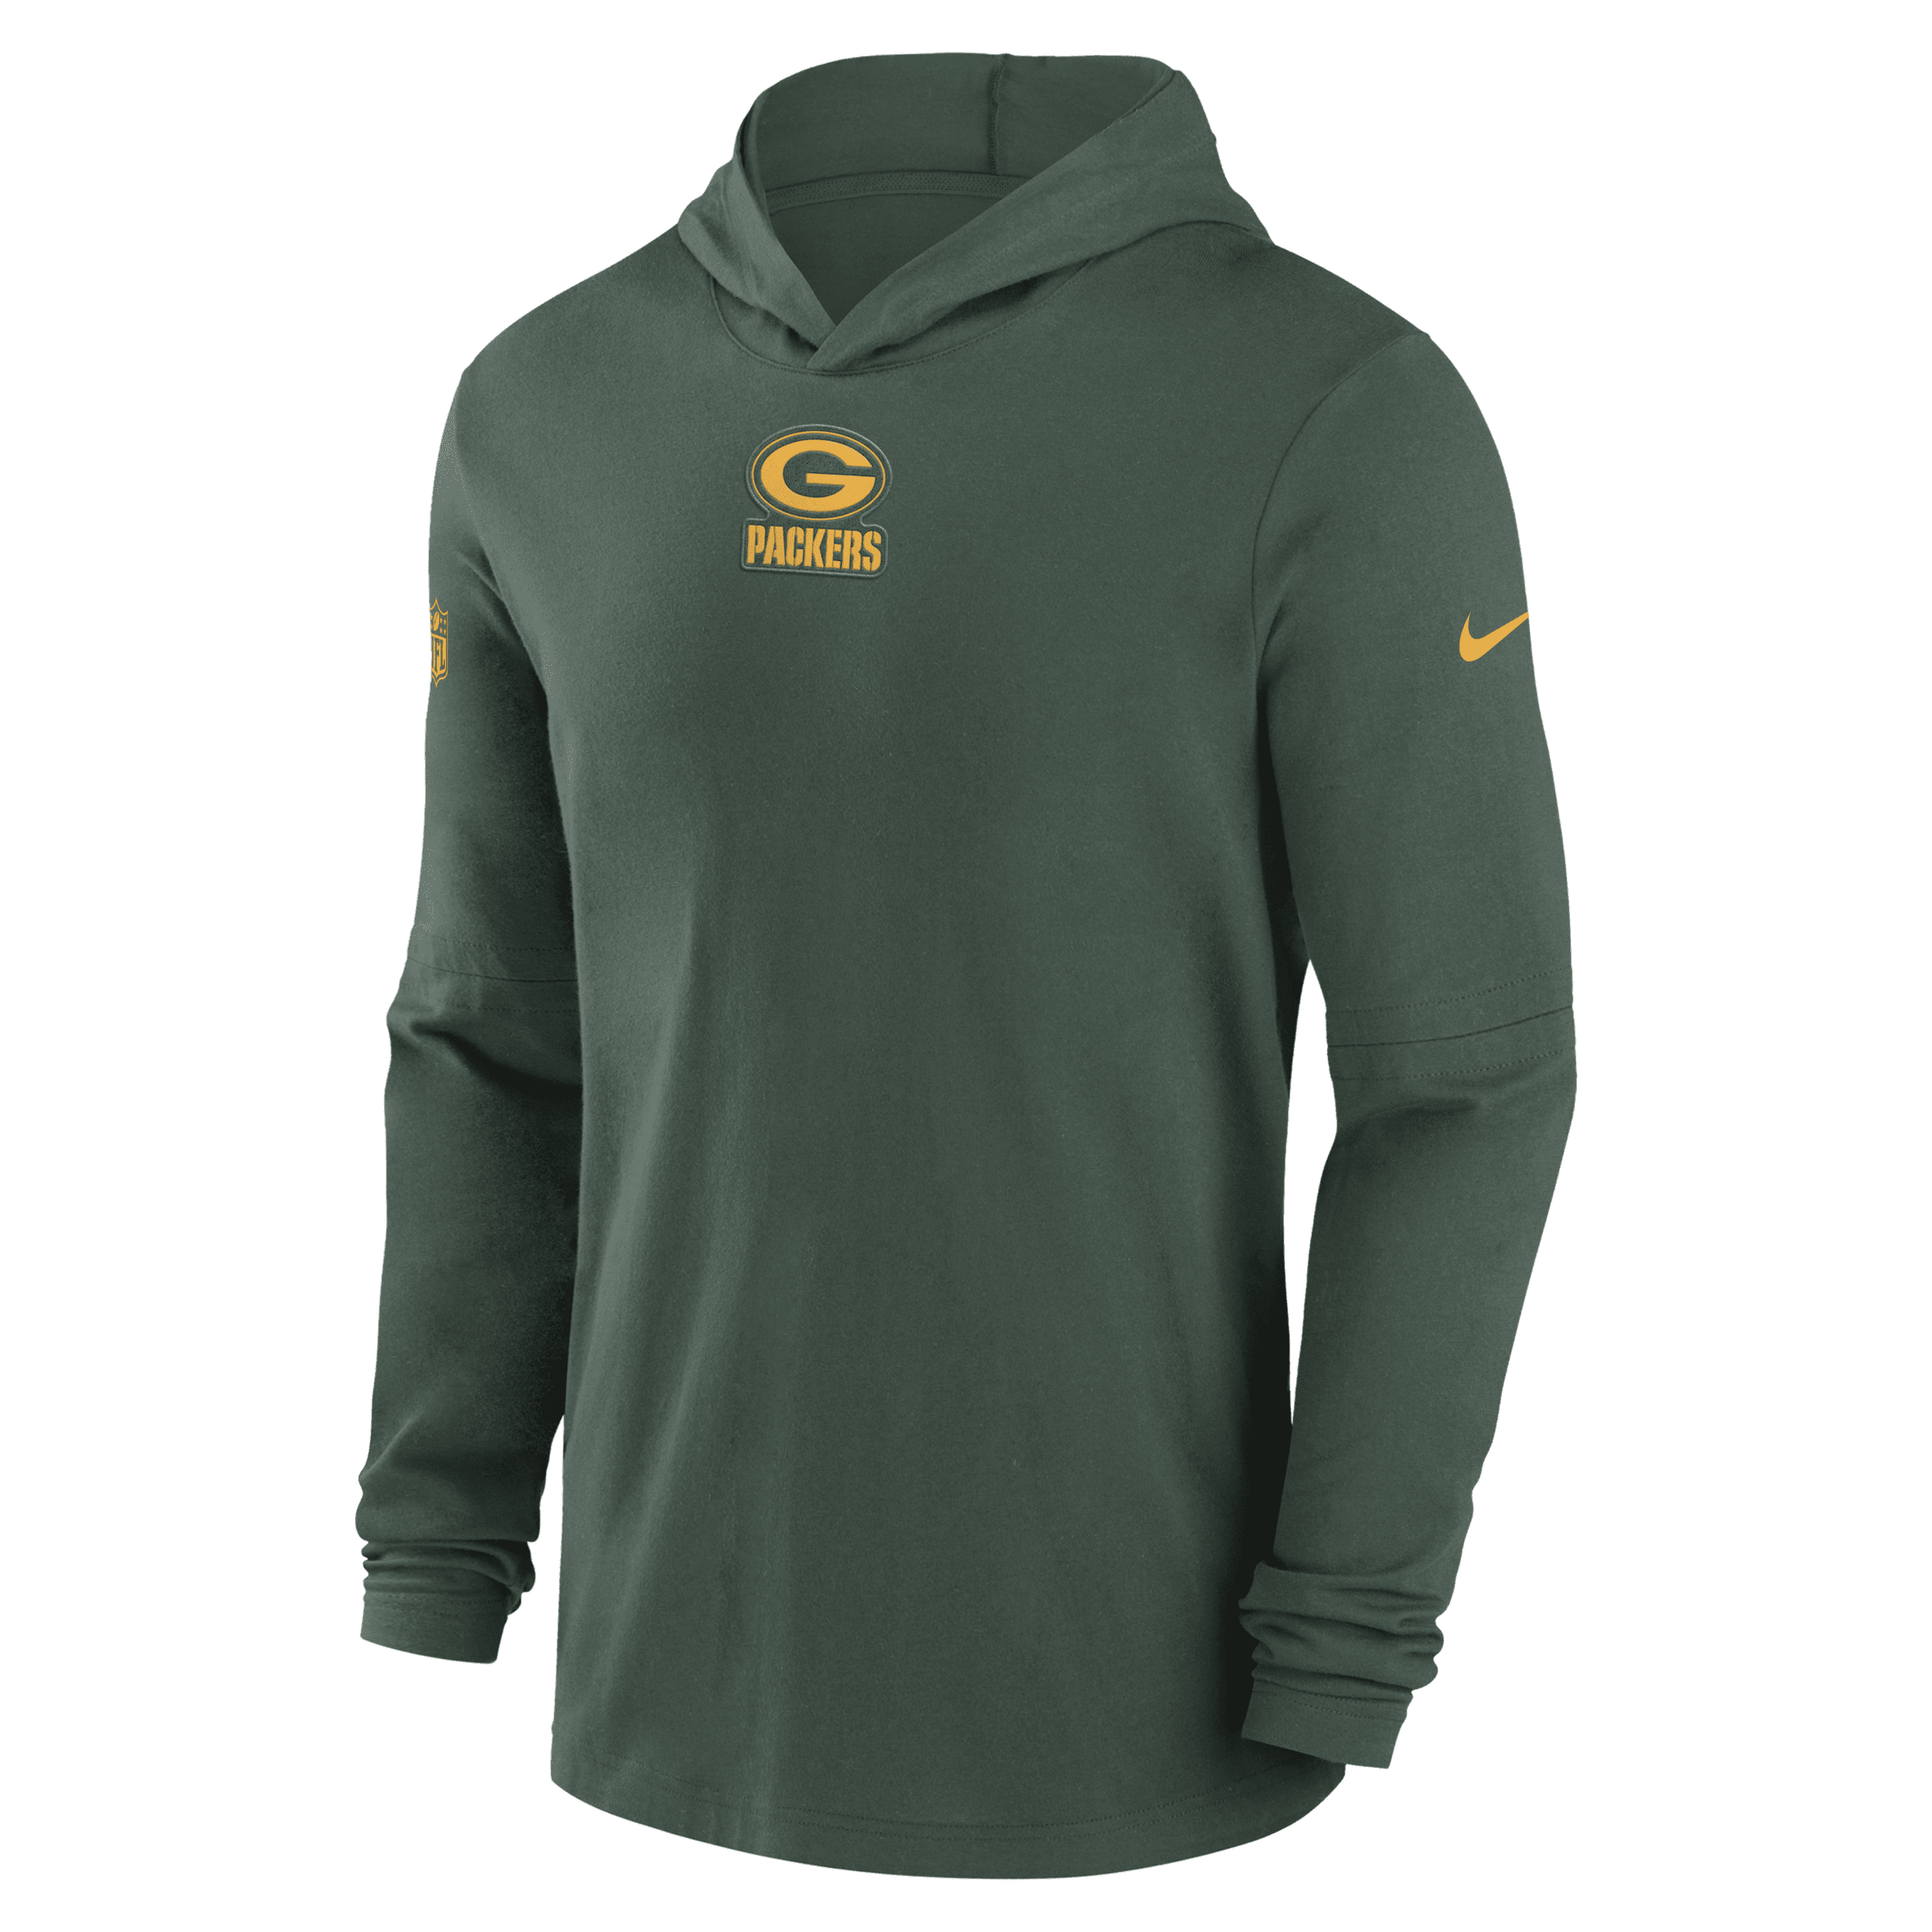 Shop Nike Green Bay Packers Sideline Menâs  Men's Dri-fit Nfl Long-sleeve Hooded Top